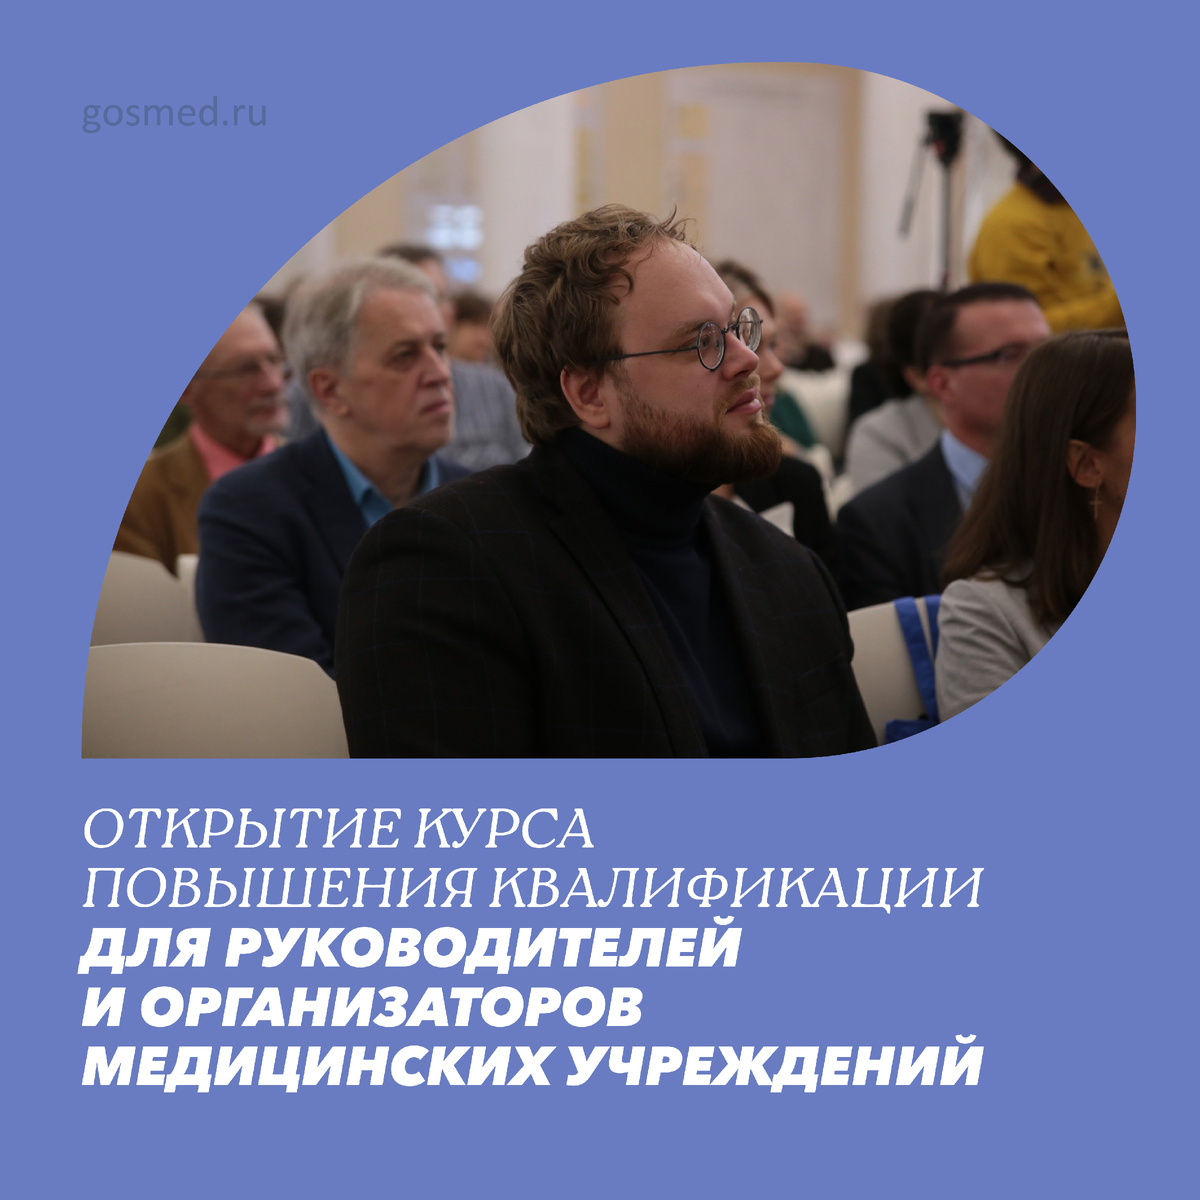 В Санкт-Петербургском государственном университете проводится запись на дополнительную образовательную программу «Управление медицинскими организациями».